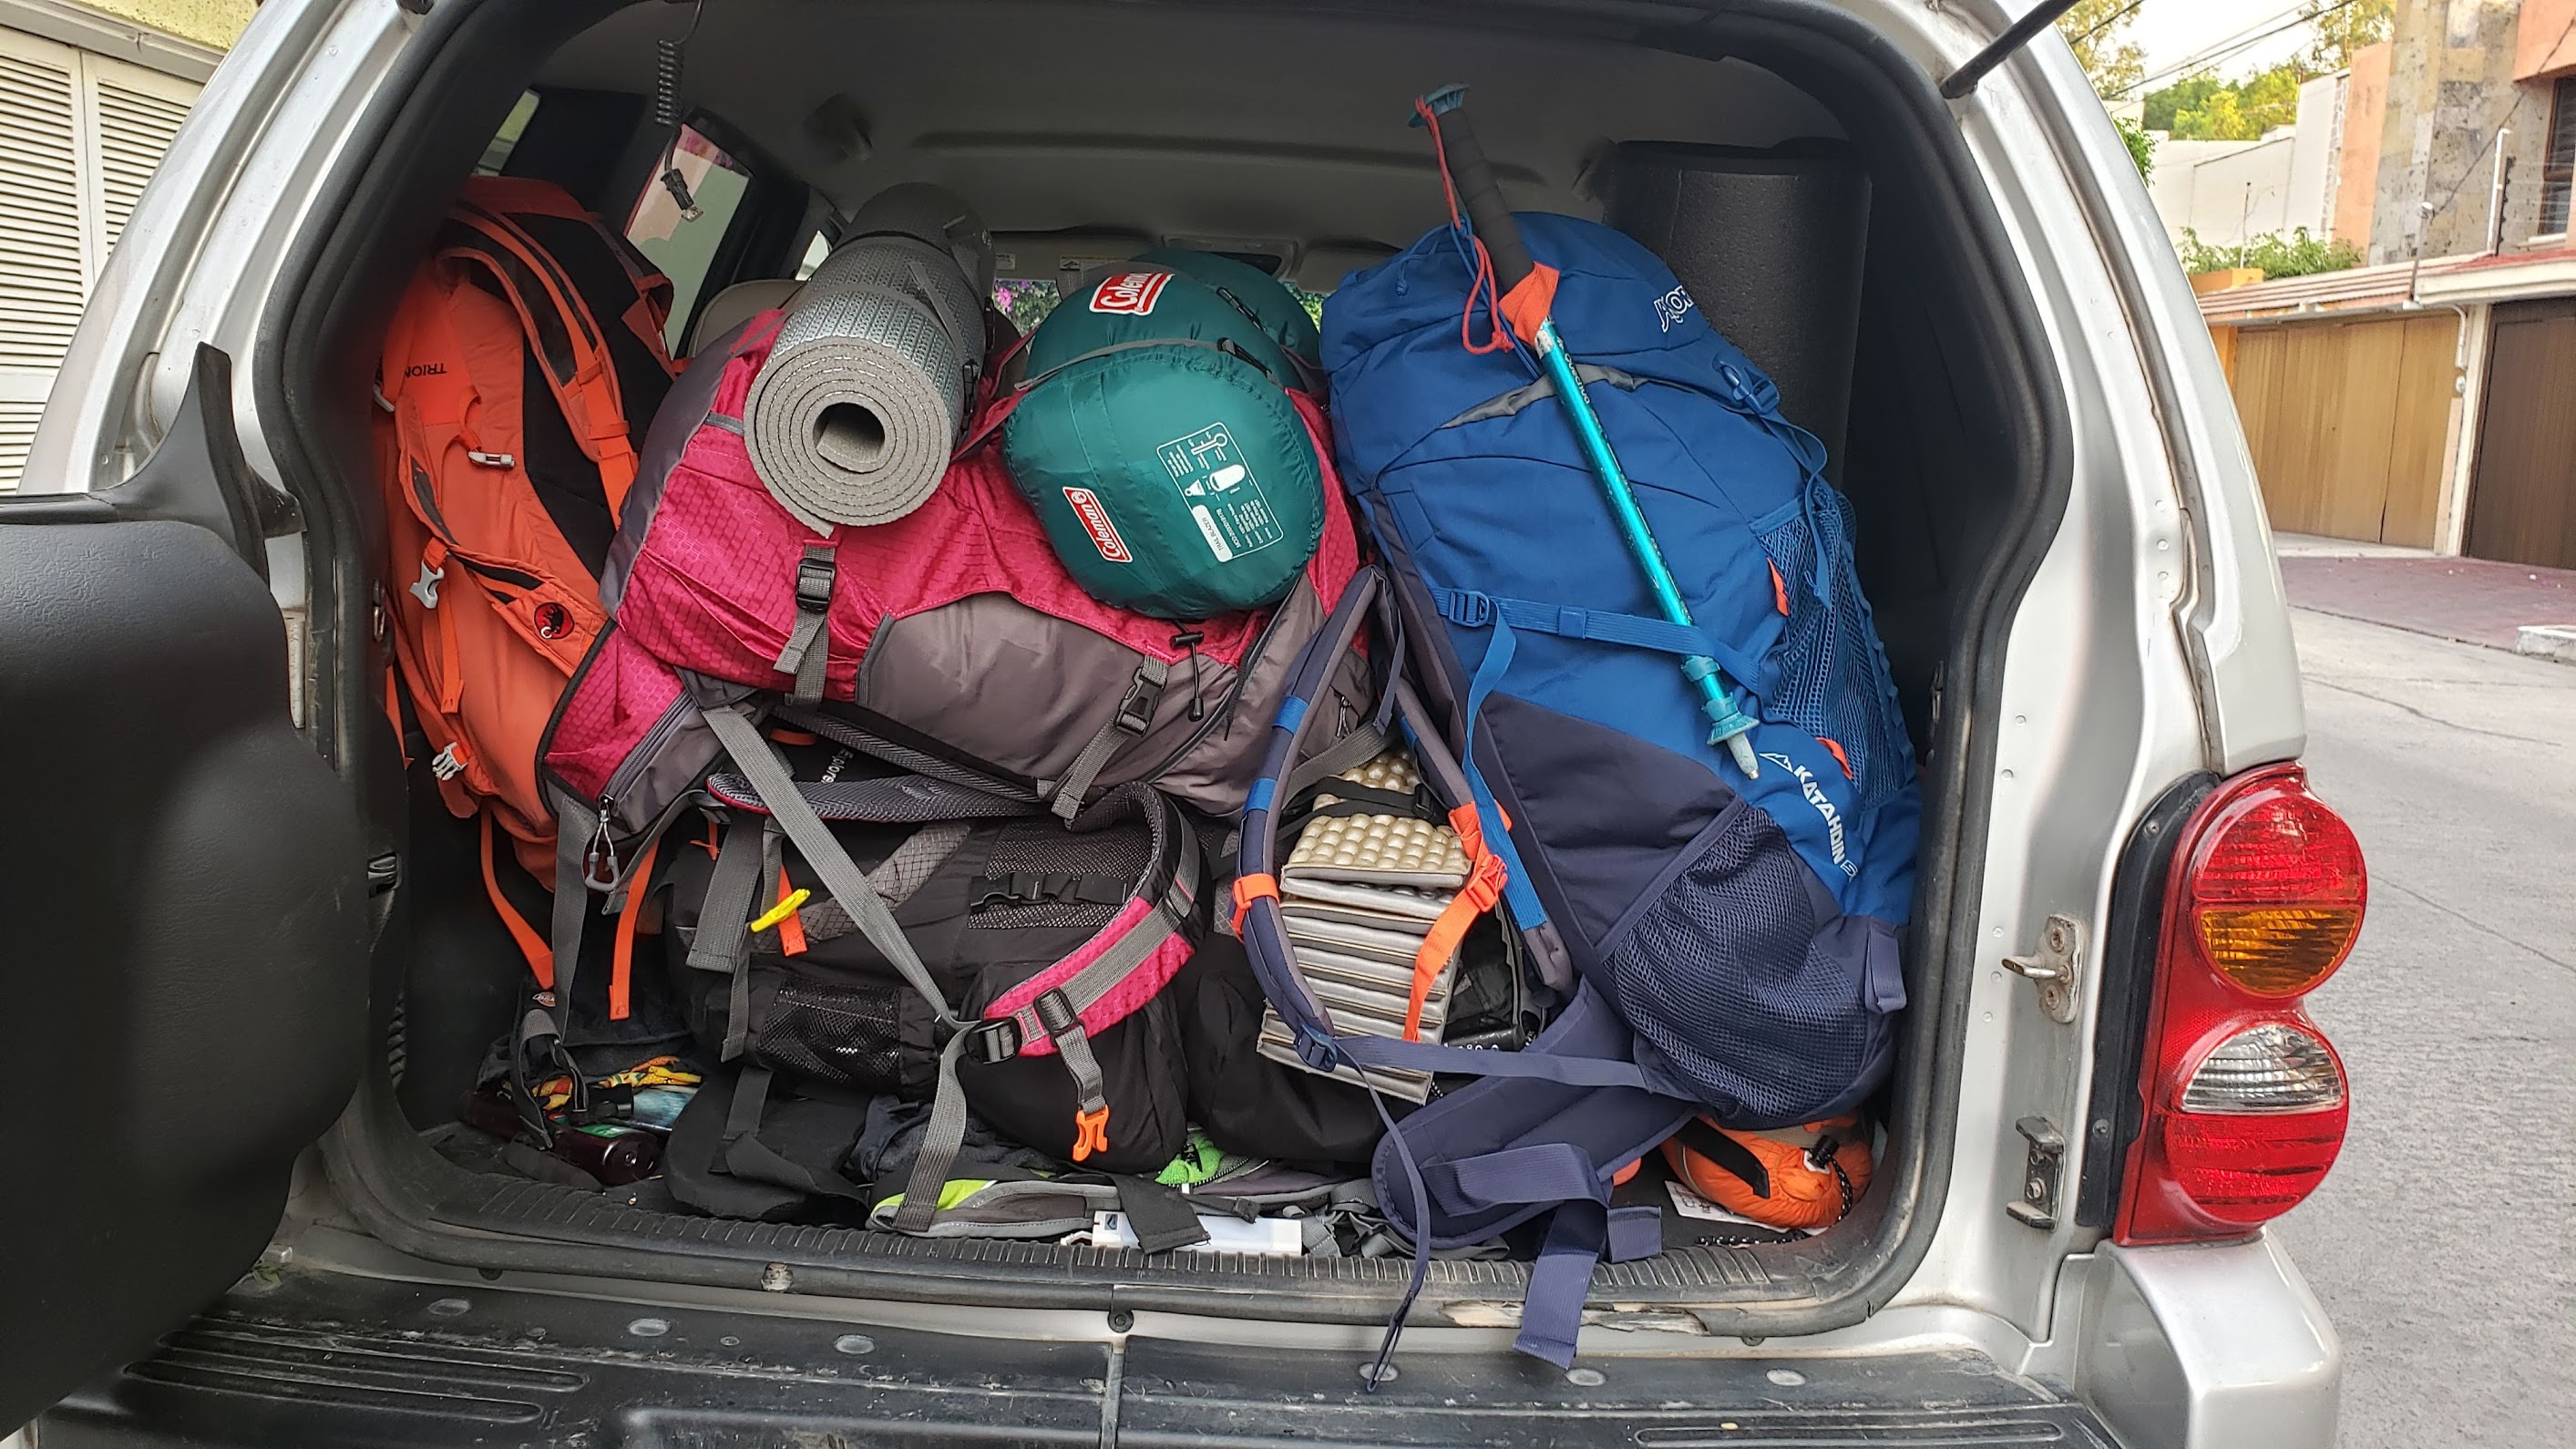 mochilas en el carro eligiendo la mejor mochila para hacer trekking y senderismo.